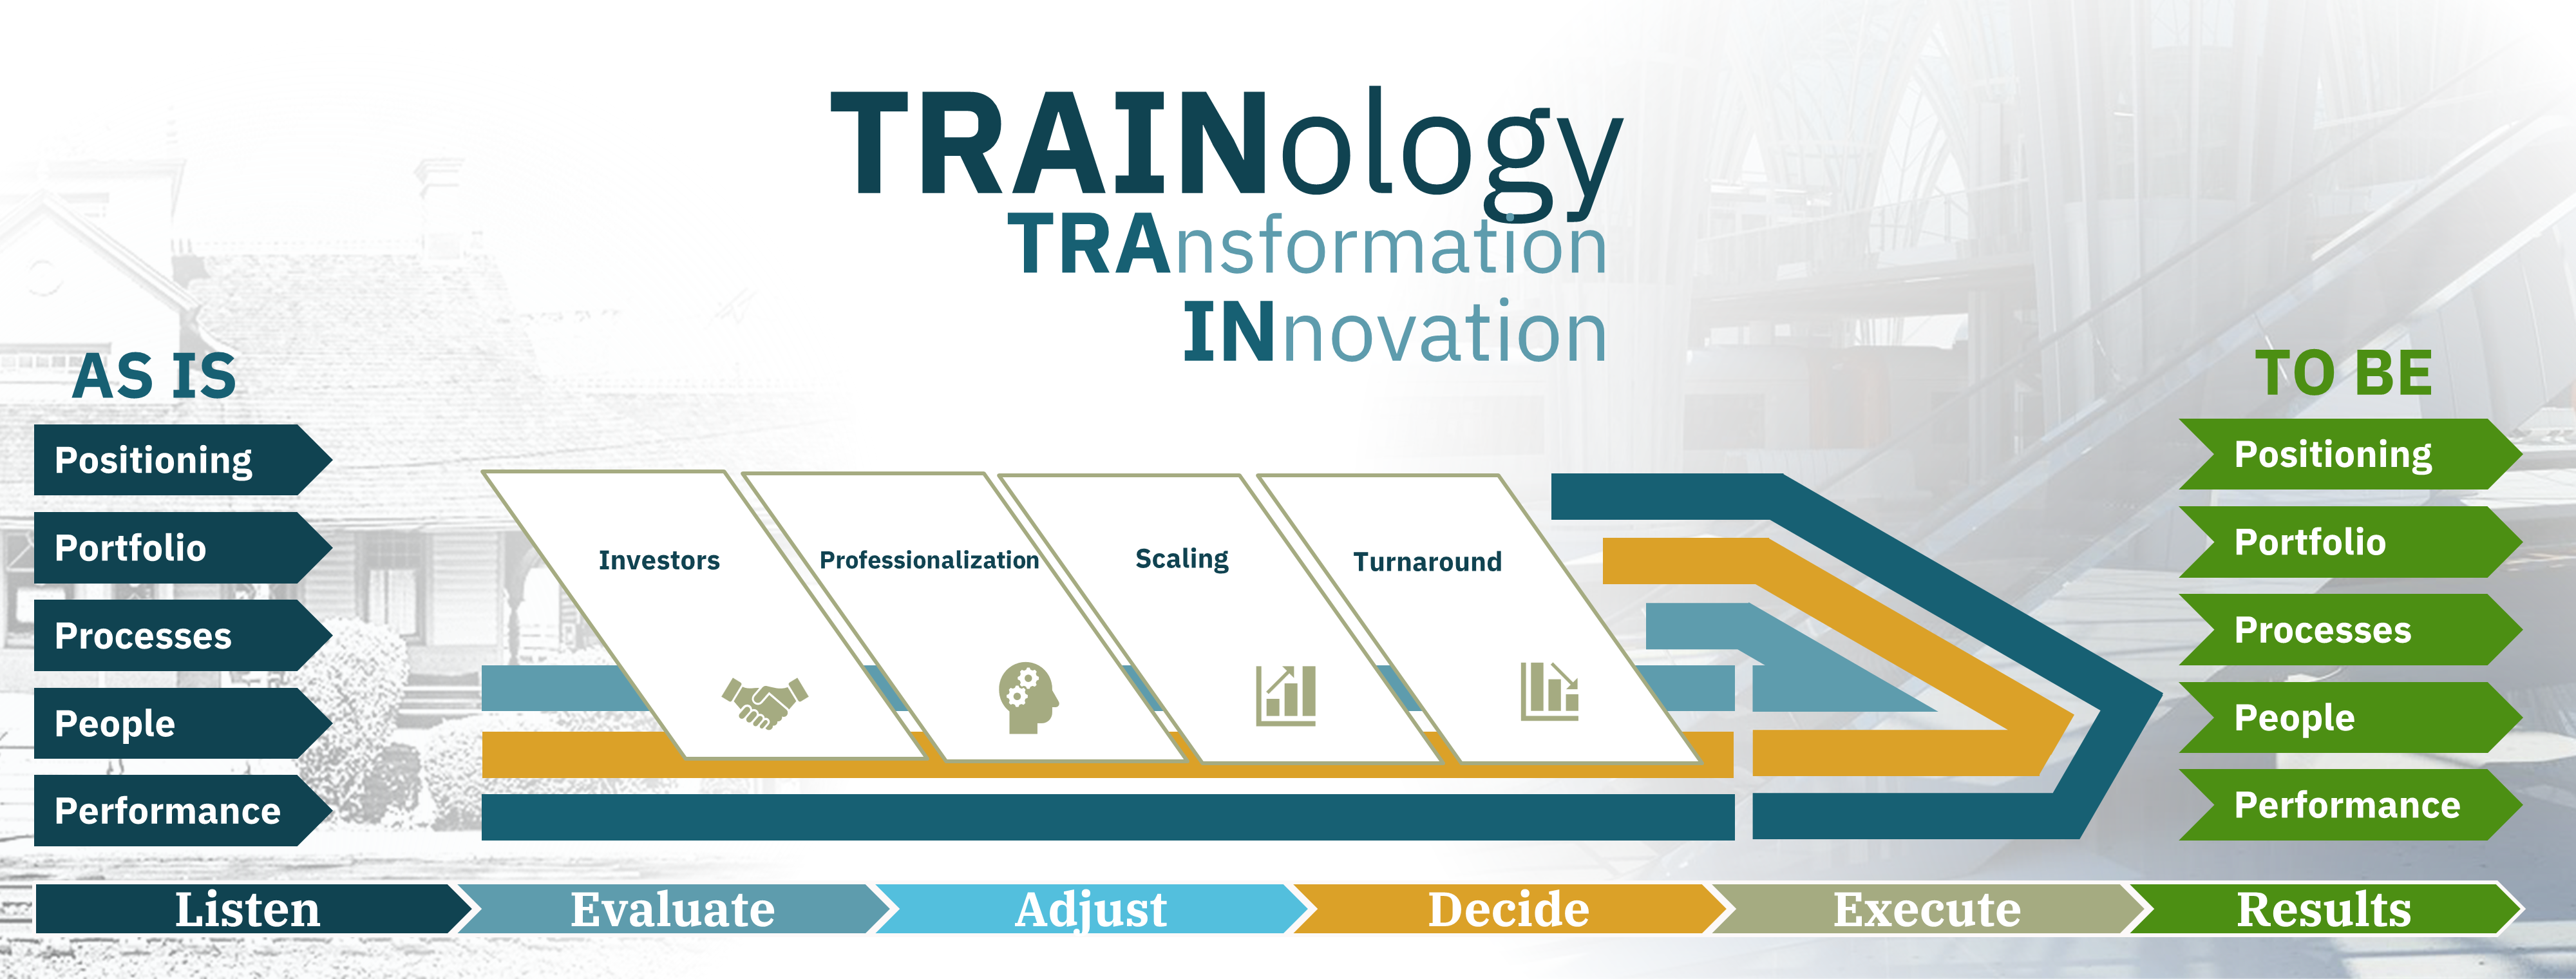 Trainology